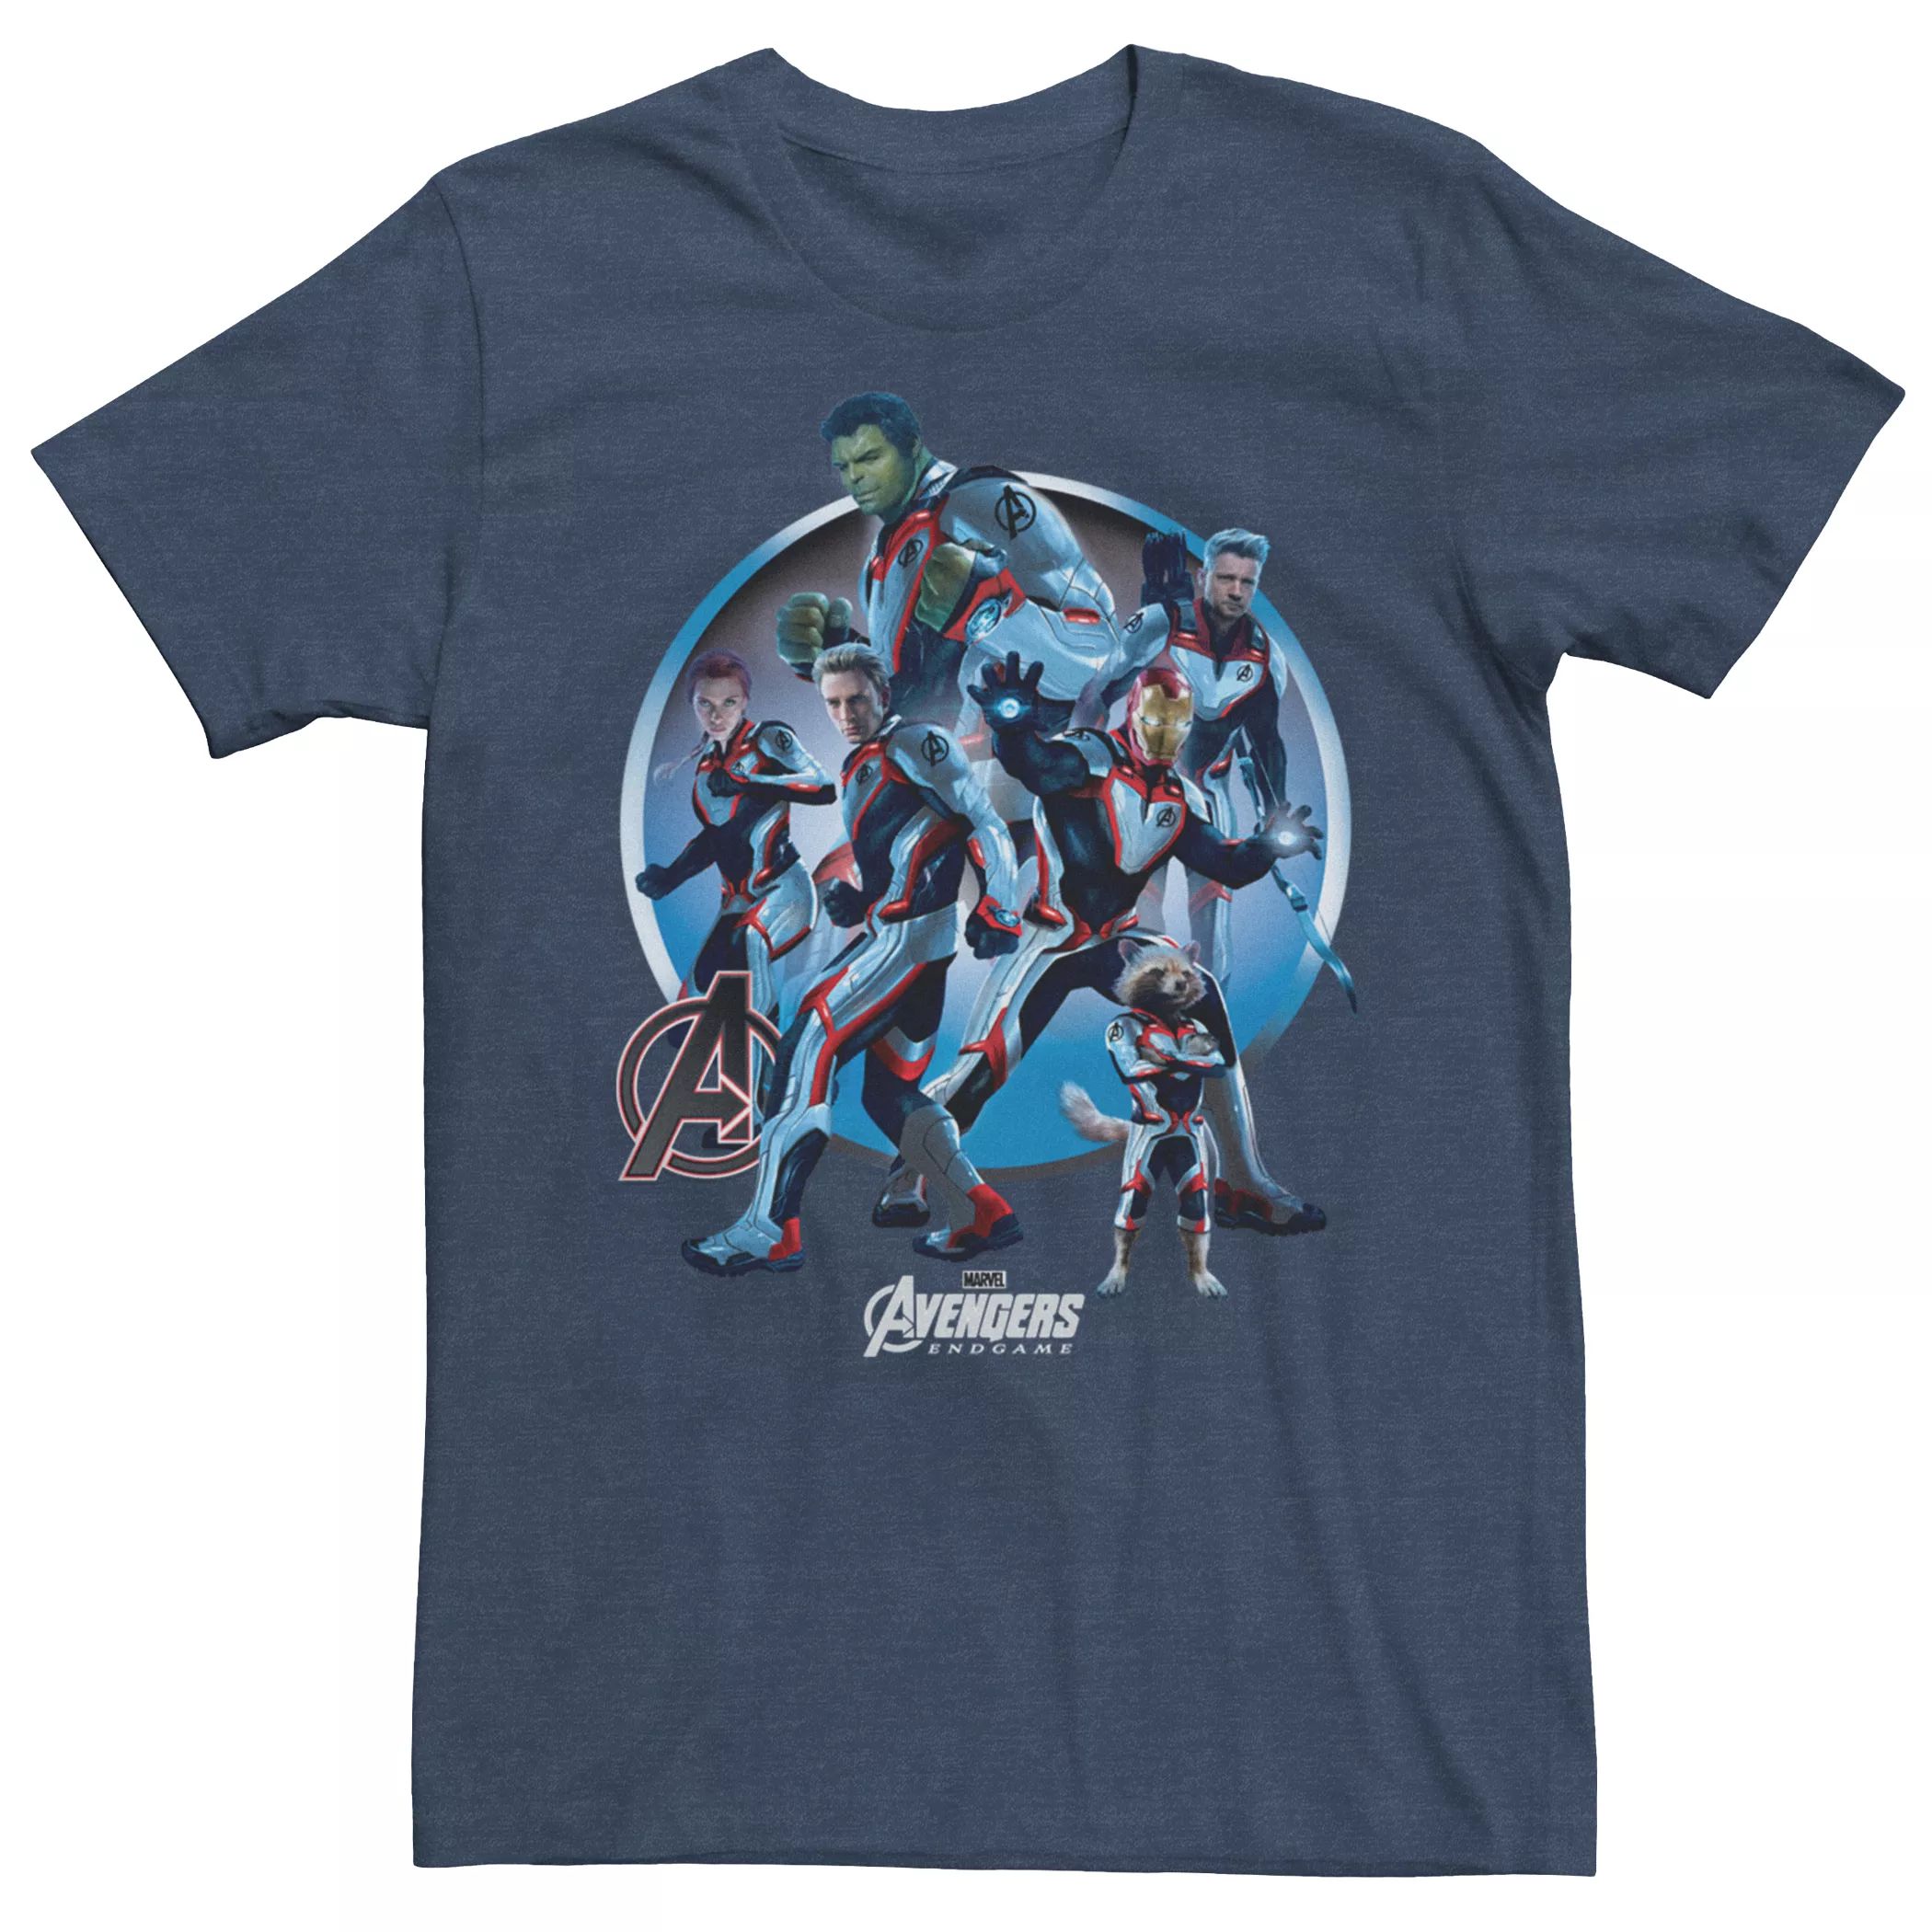 Мужская футболка квантового костюма Marvel Avengers Endgame Licensed Character